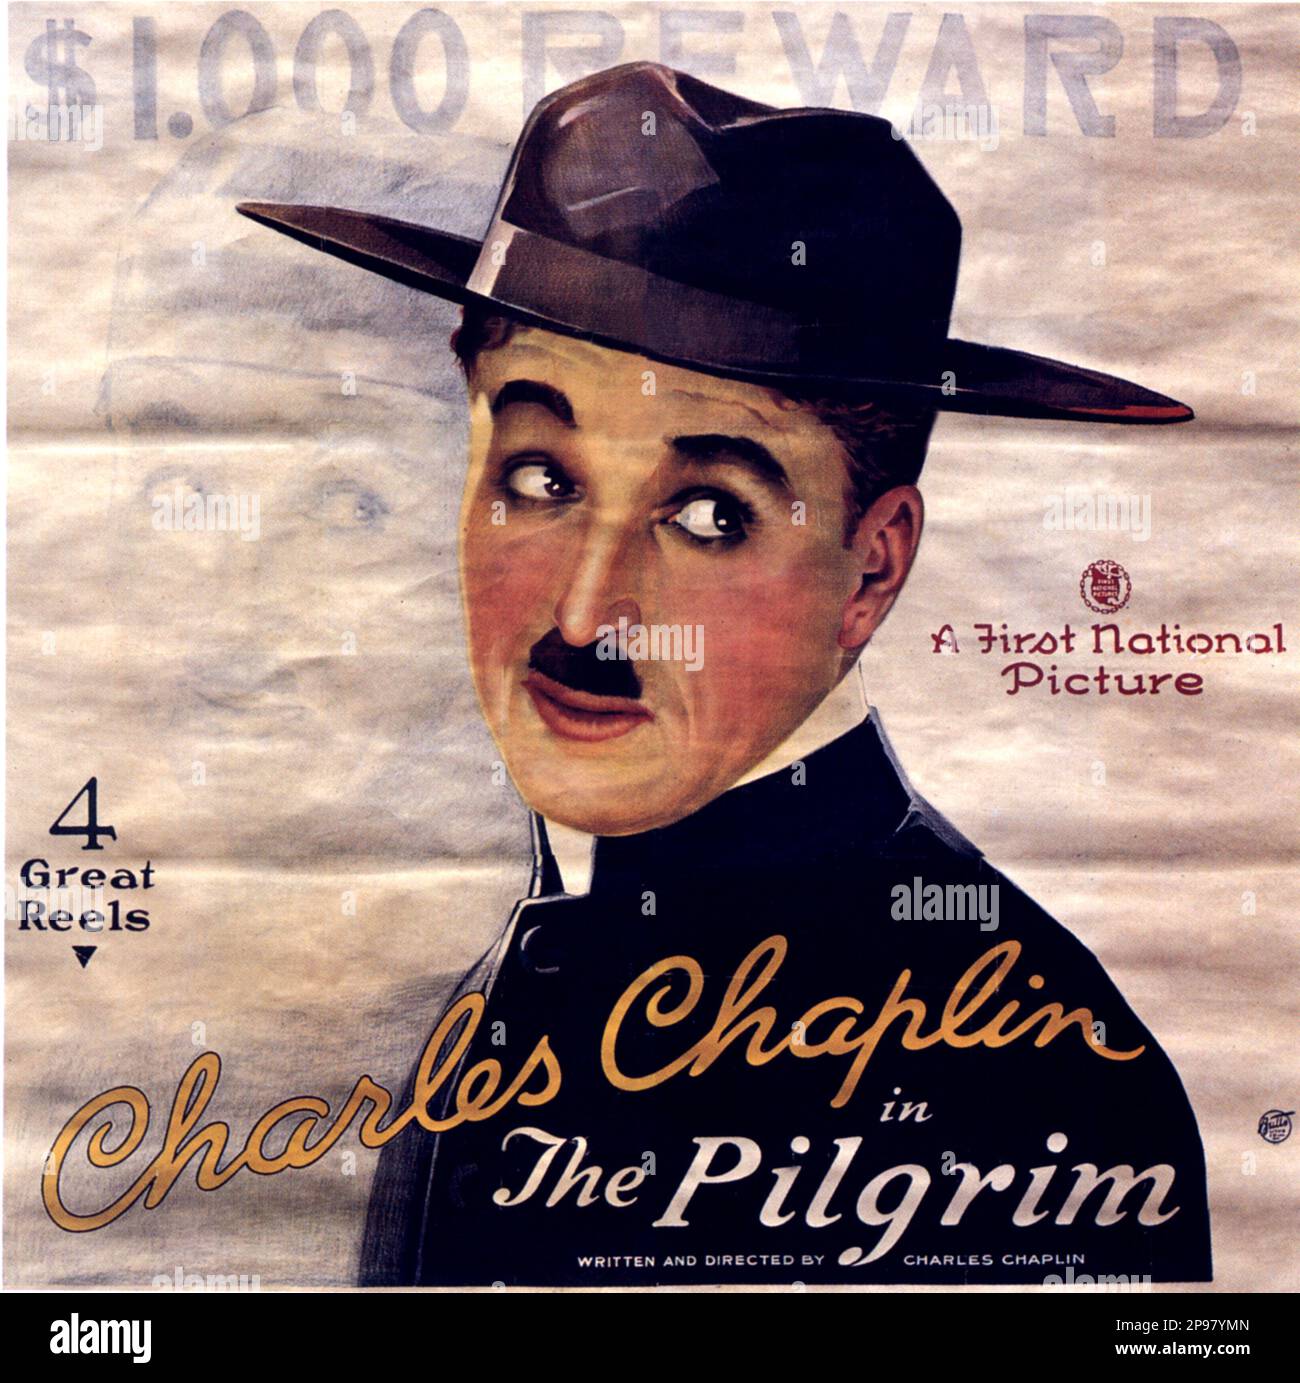 1923 : The original movie poster  of silent movie actor and movie director CHARLES CHAPLIN ( 1889 - 1977 ) in THE PILGRIM - CINEMA - FILM - candid - portrait - ritratto - hat - cappello - regista cinematografico - attore  - comico  - USA - FILM - MOVIE - CINEMA   - poster pubblicitario - poster - advertising - locandina   ----   Archivio GBB Stock Photo